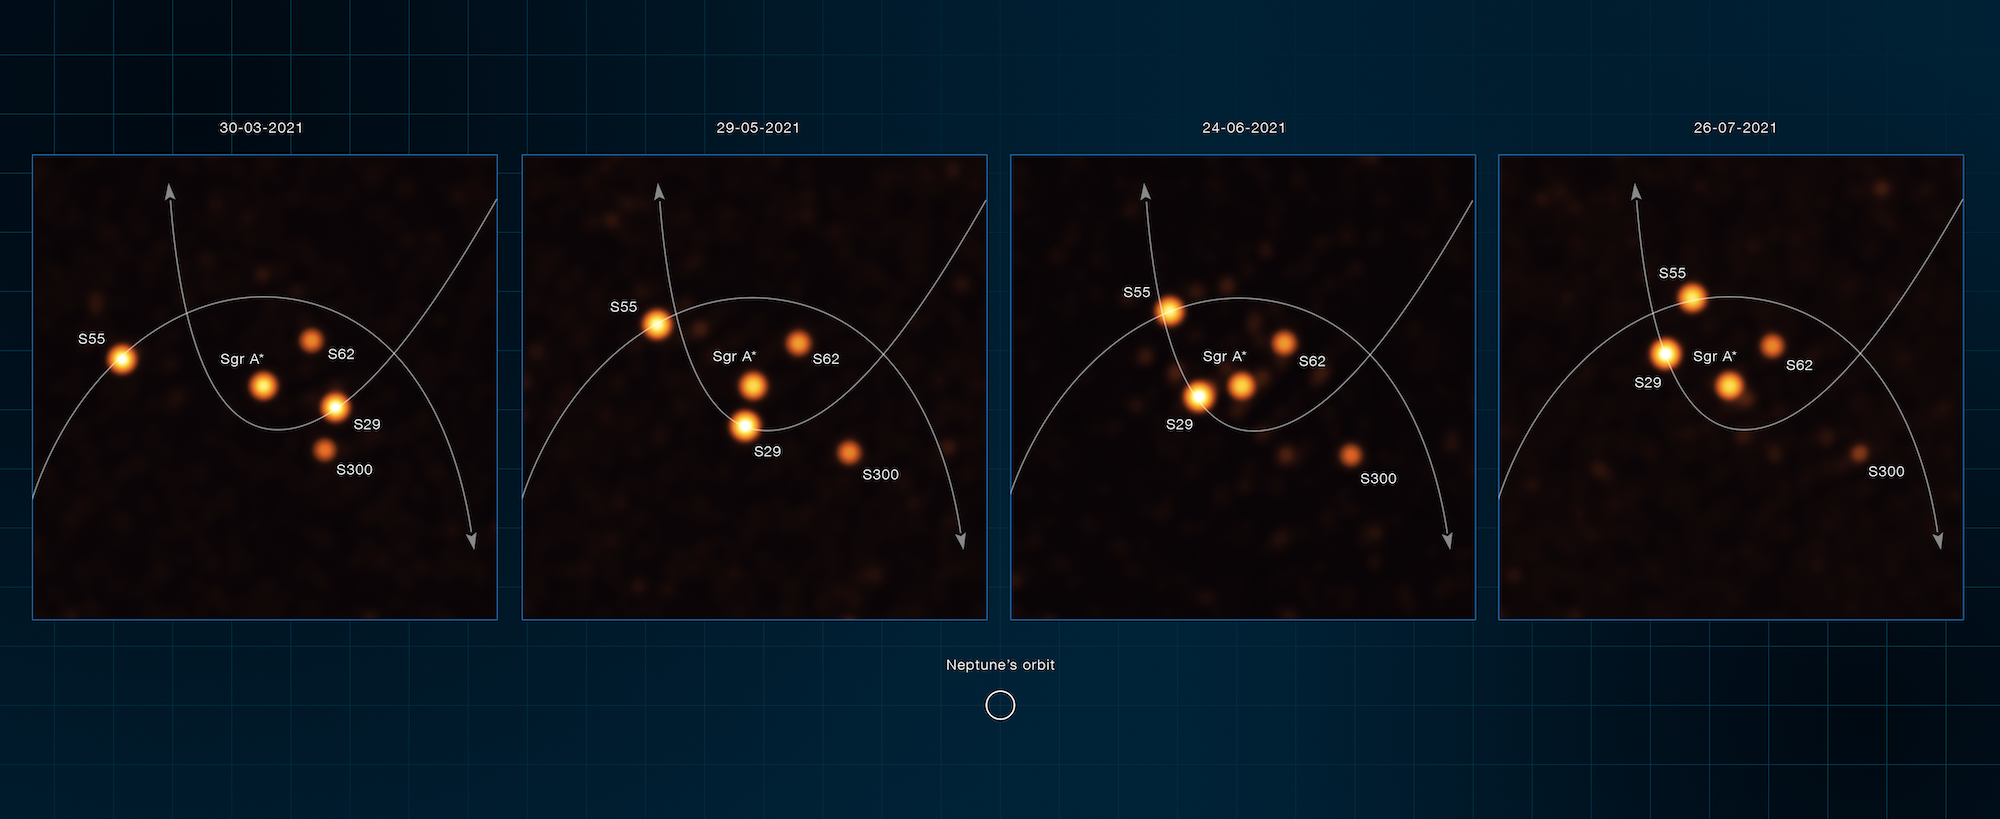 Immagini di alcune stelle in orbita attorno a Sgr* ottenute con lo strumento GRAVITY installato sul VLTI (Very Large Telescope Interferometer). Credits: ESO/GRAVITY collaboration